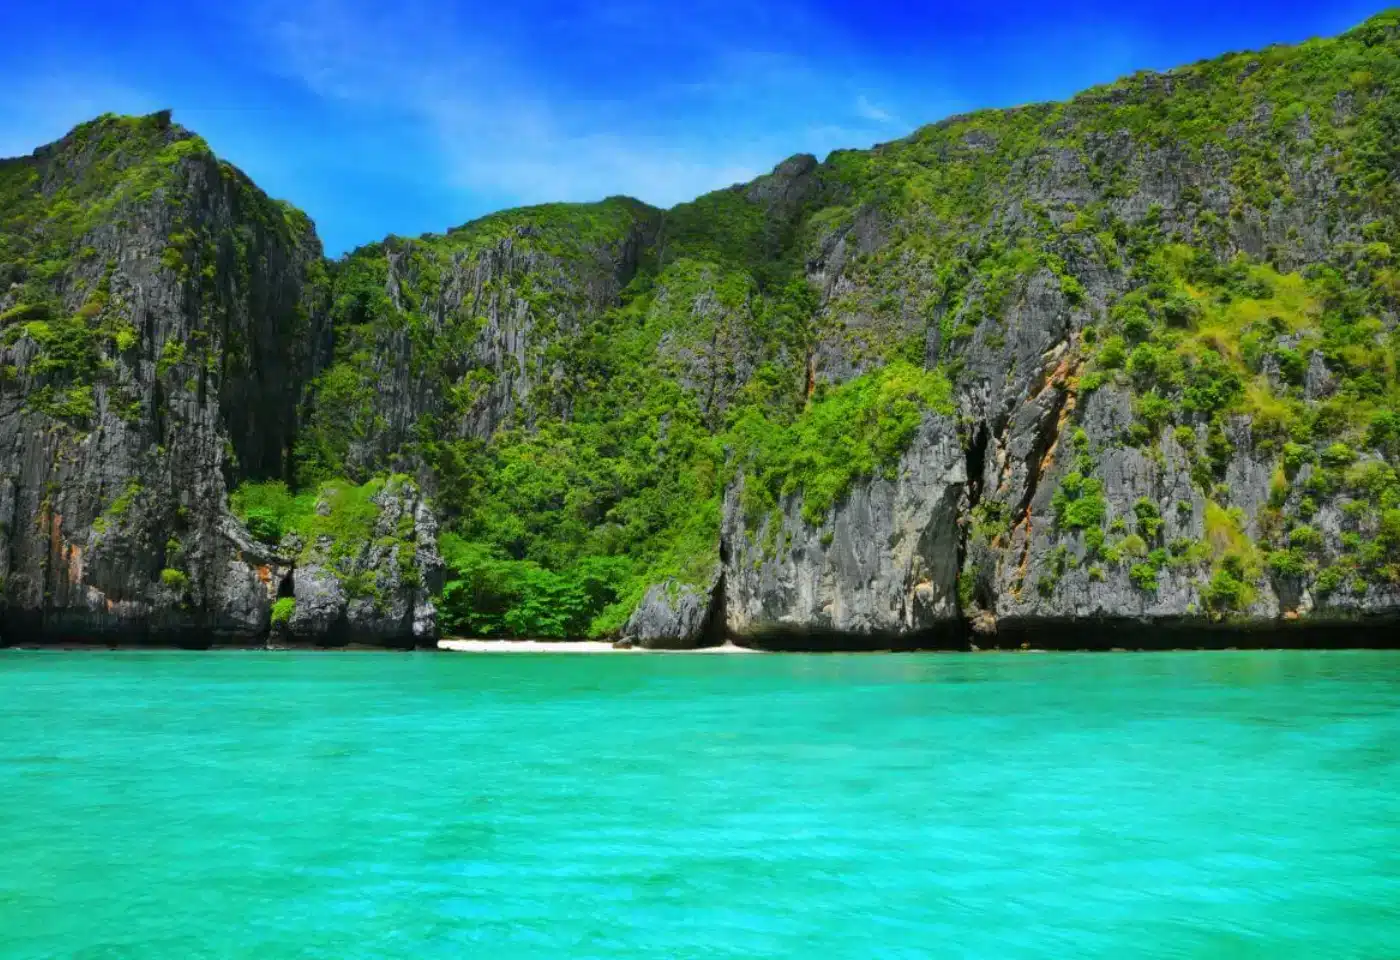 Phi Phi Island by Royal Jet Cruise - Phuket Thailand Travel